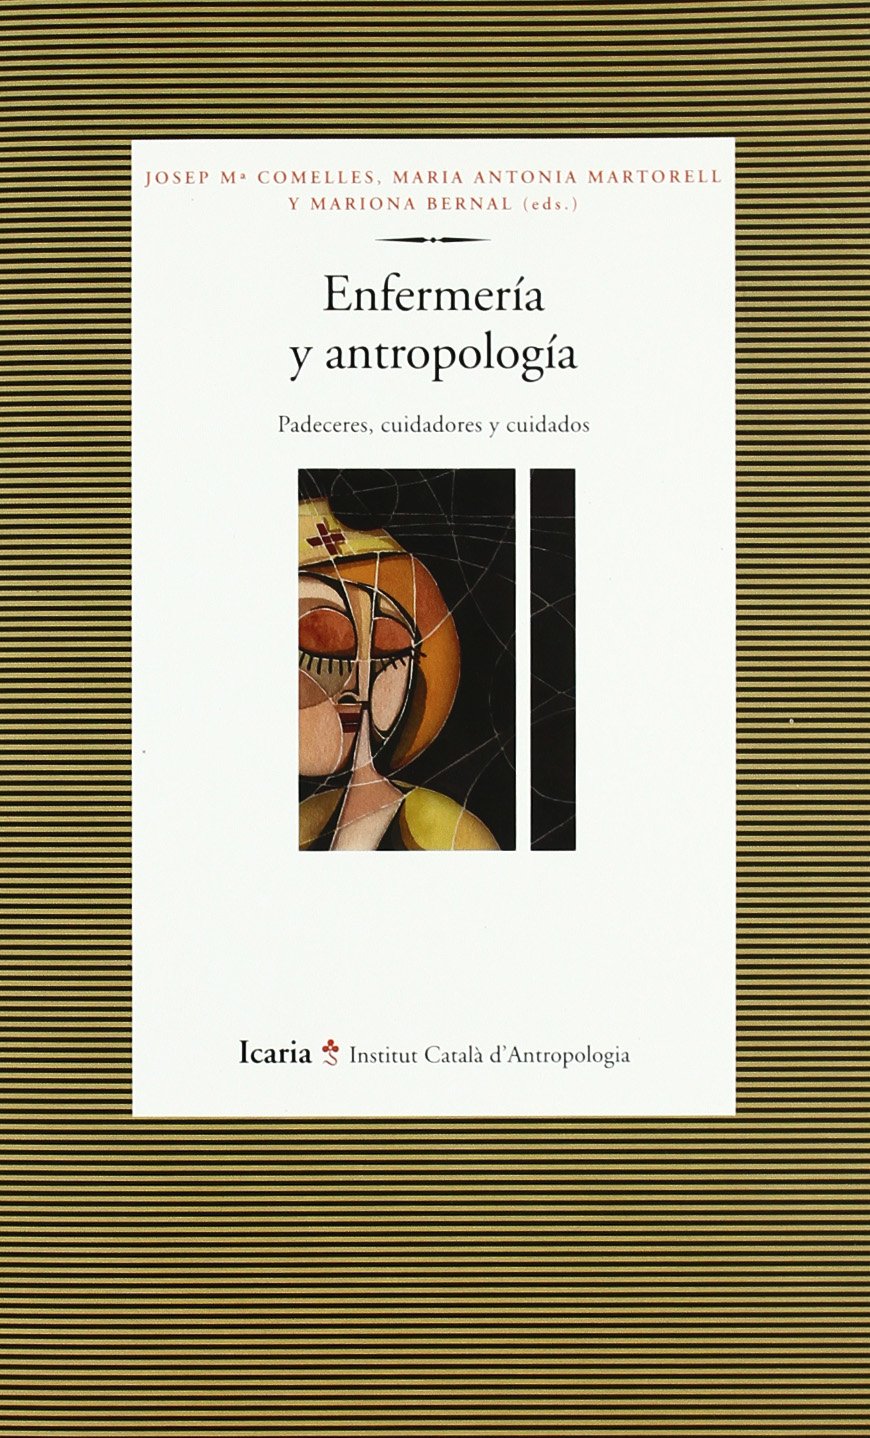 Imagen de portada del libro Enfermería y antropología